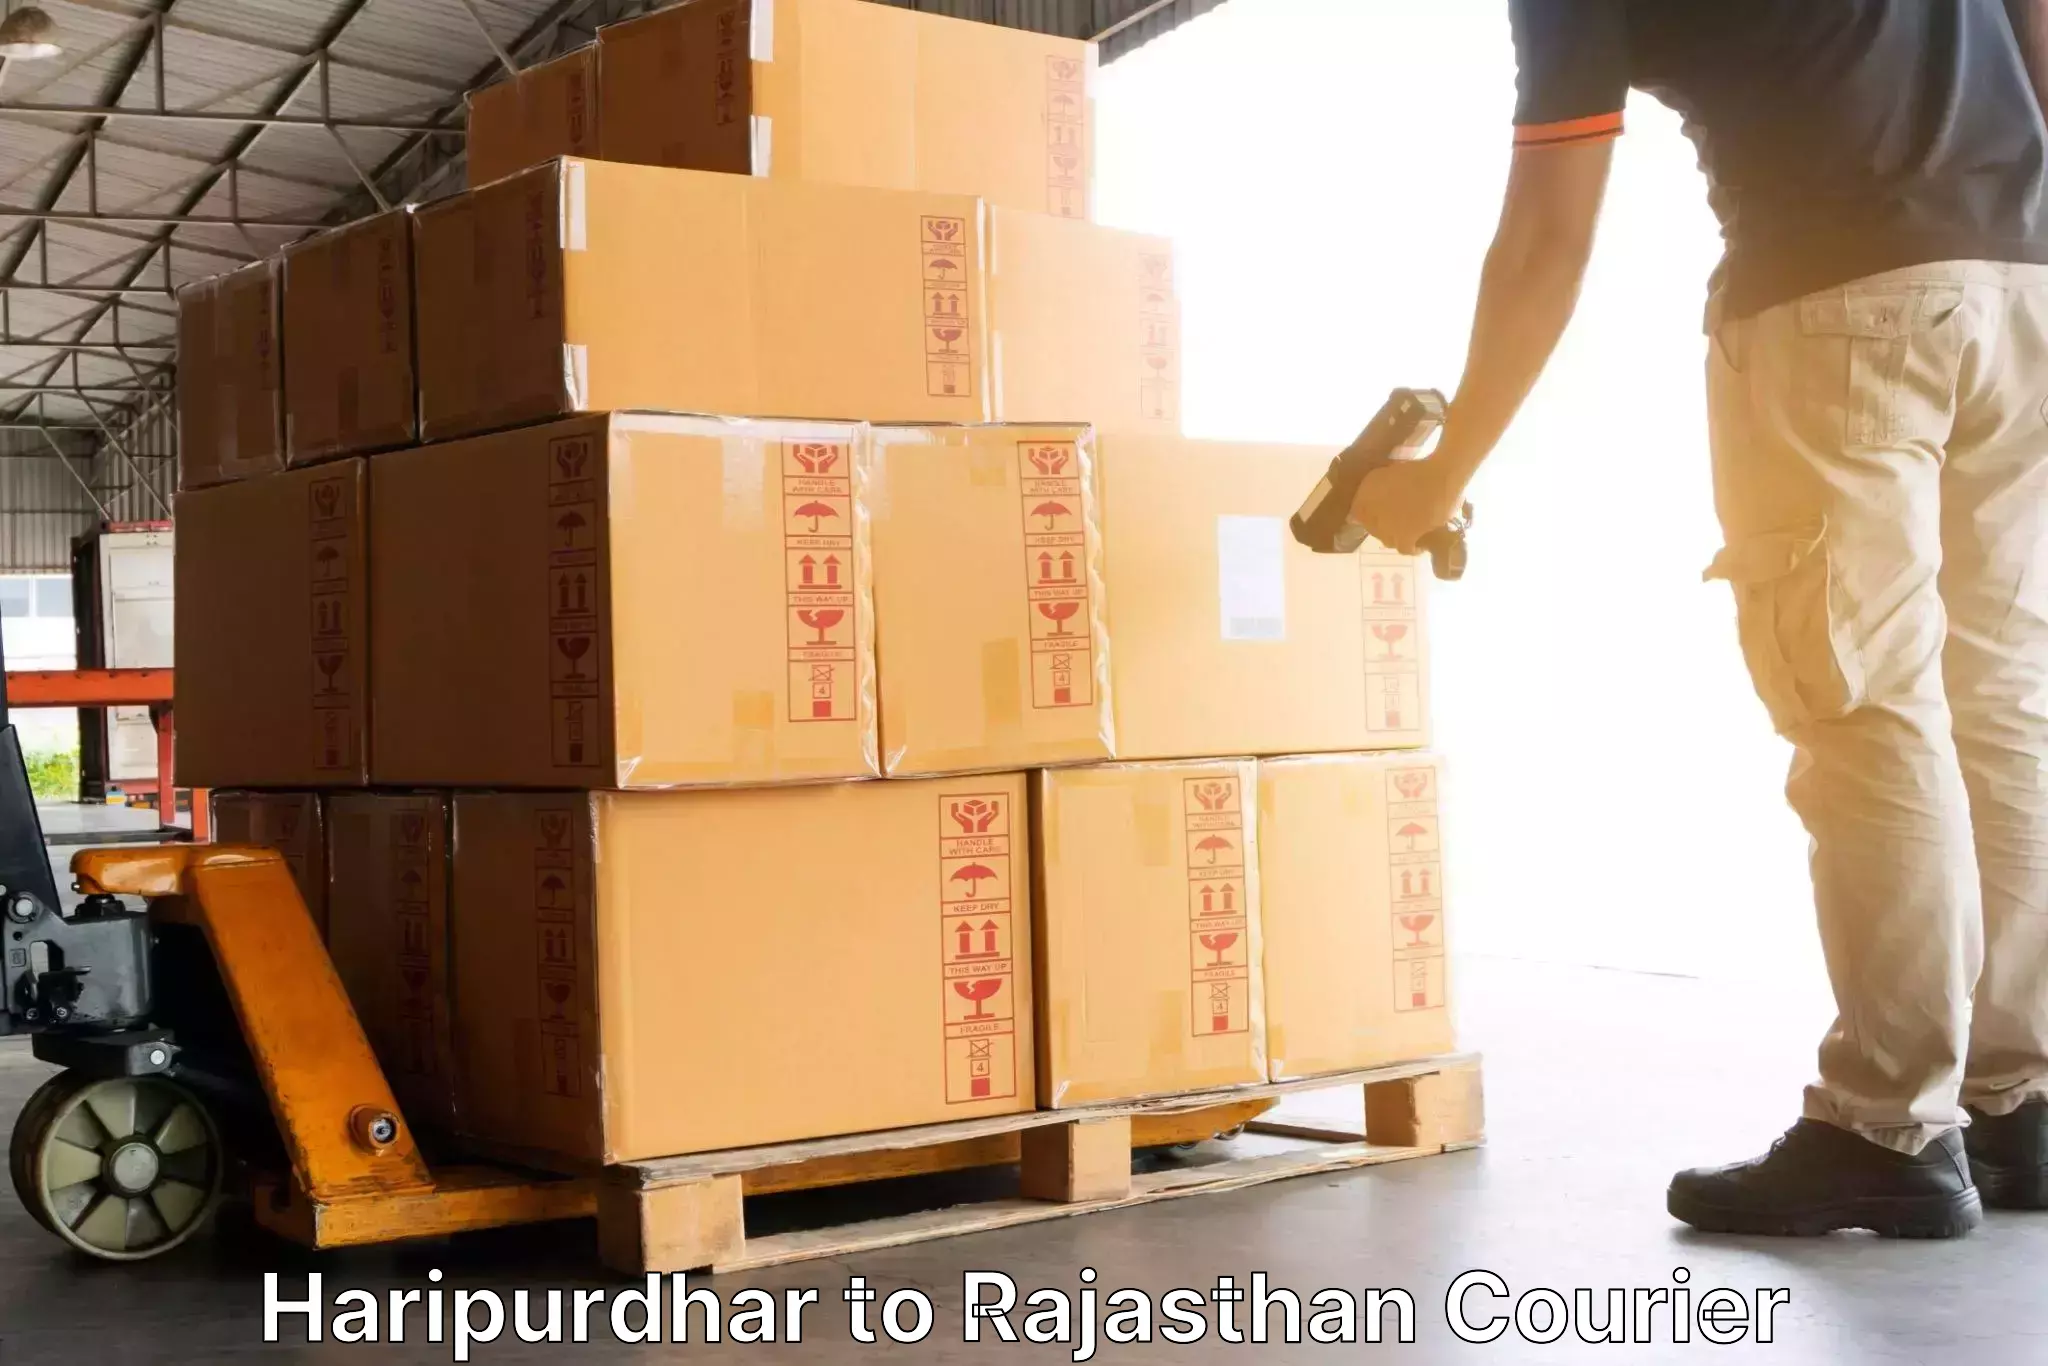 Courier service partnerships Haripurdhar to Khinwara